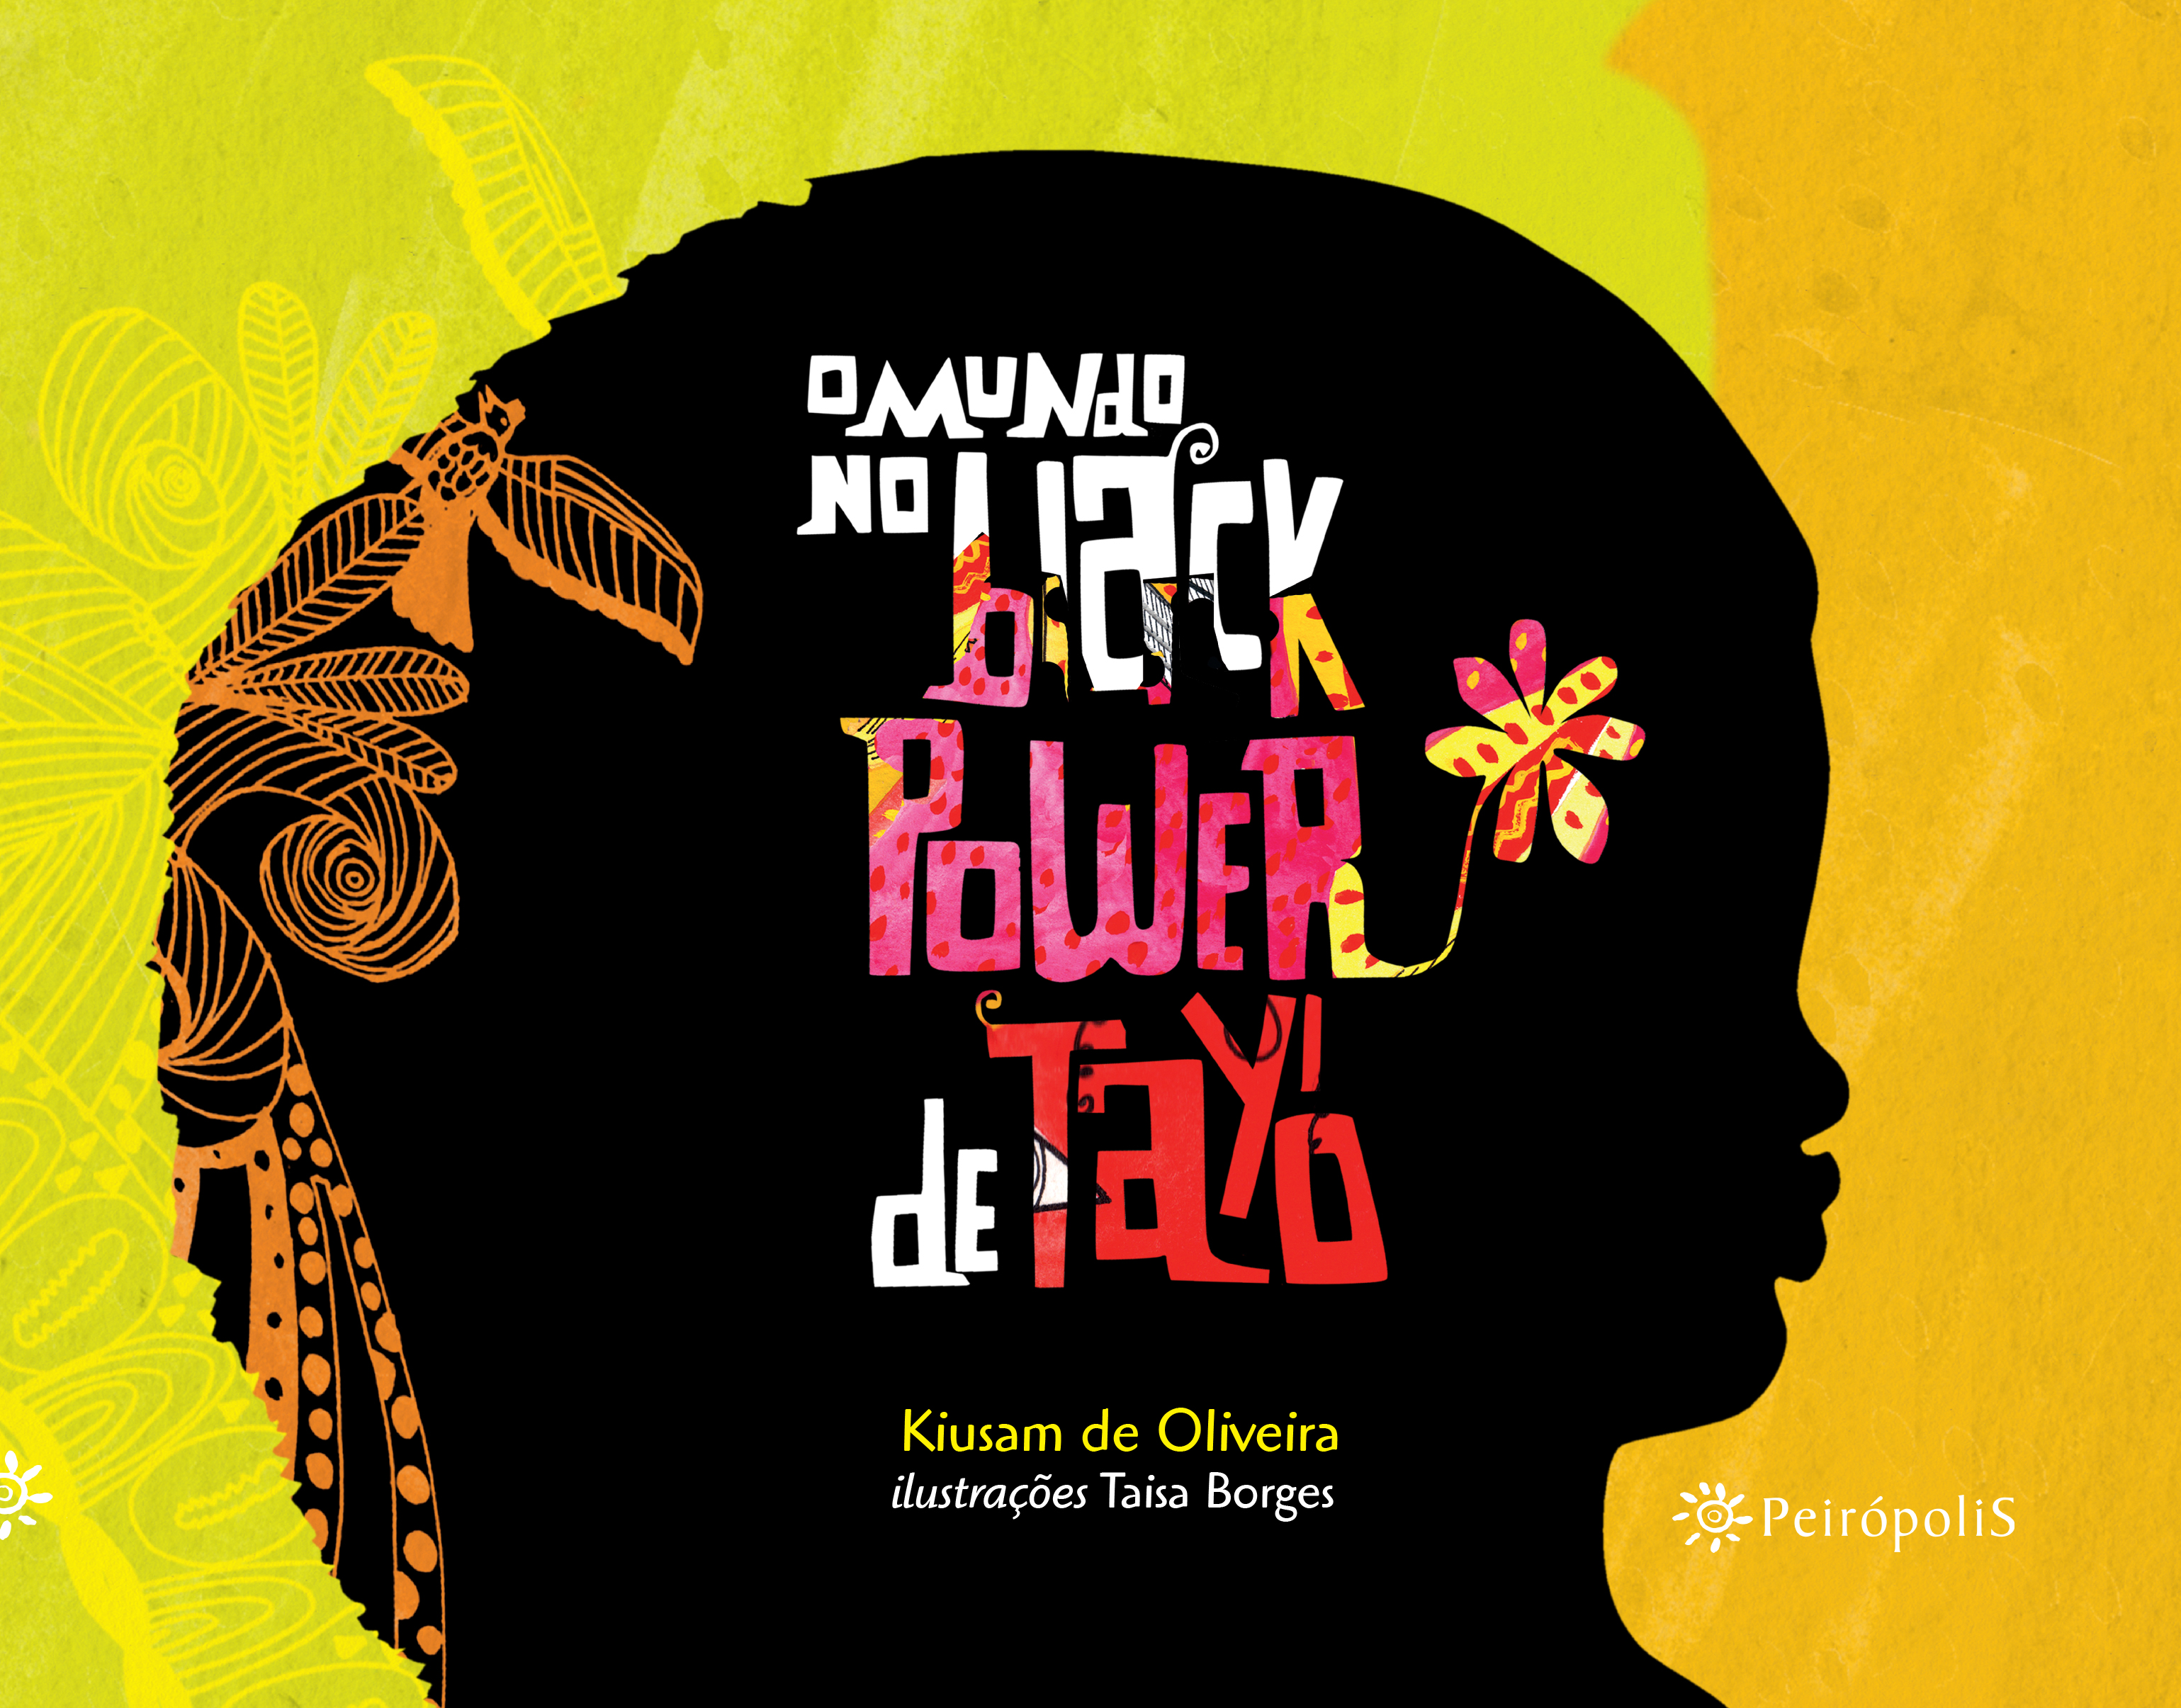 Livro "O Mundo no Black Power de Tayó". Foto: divulgação.